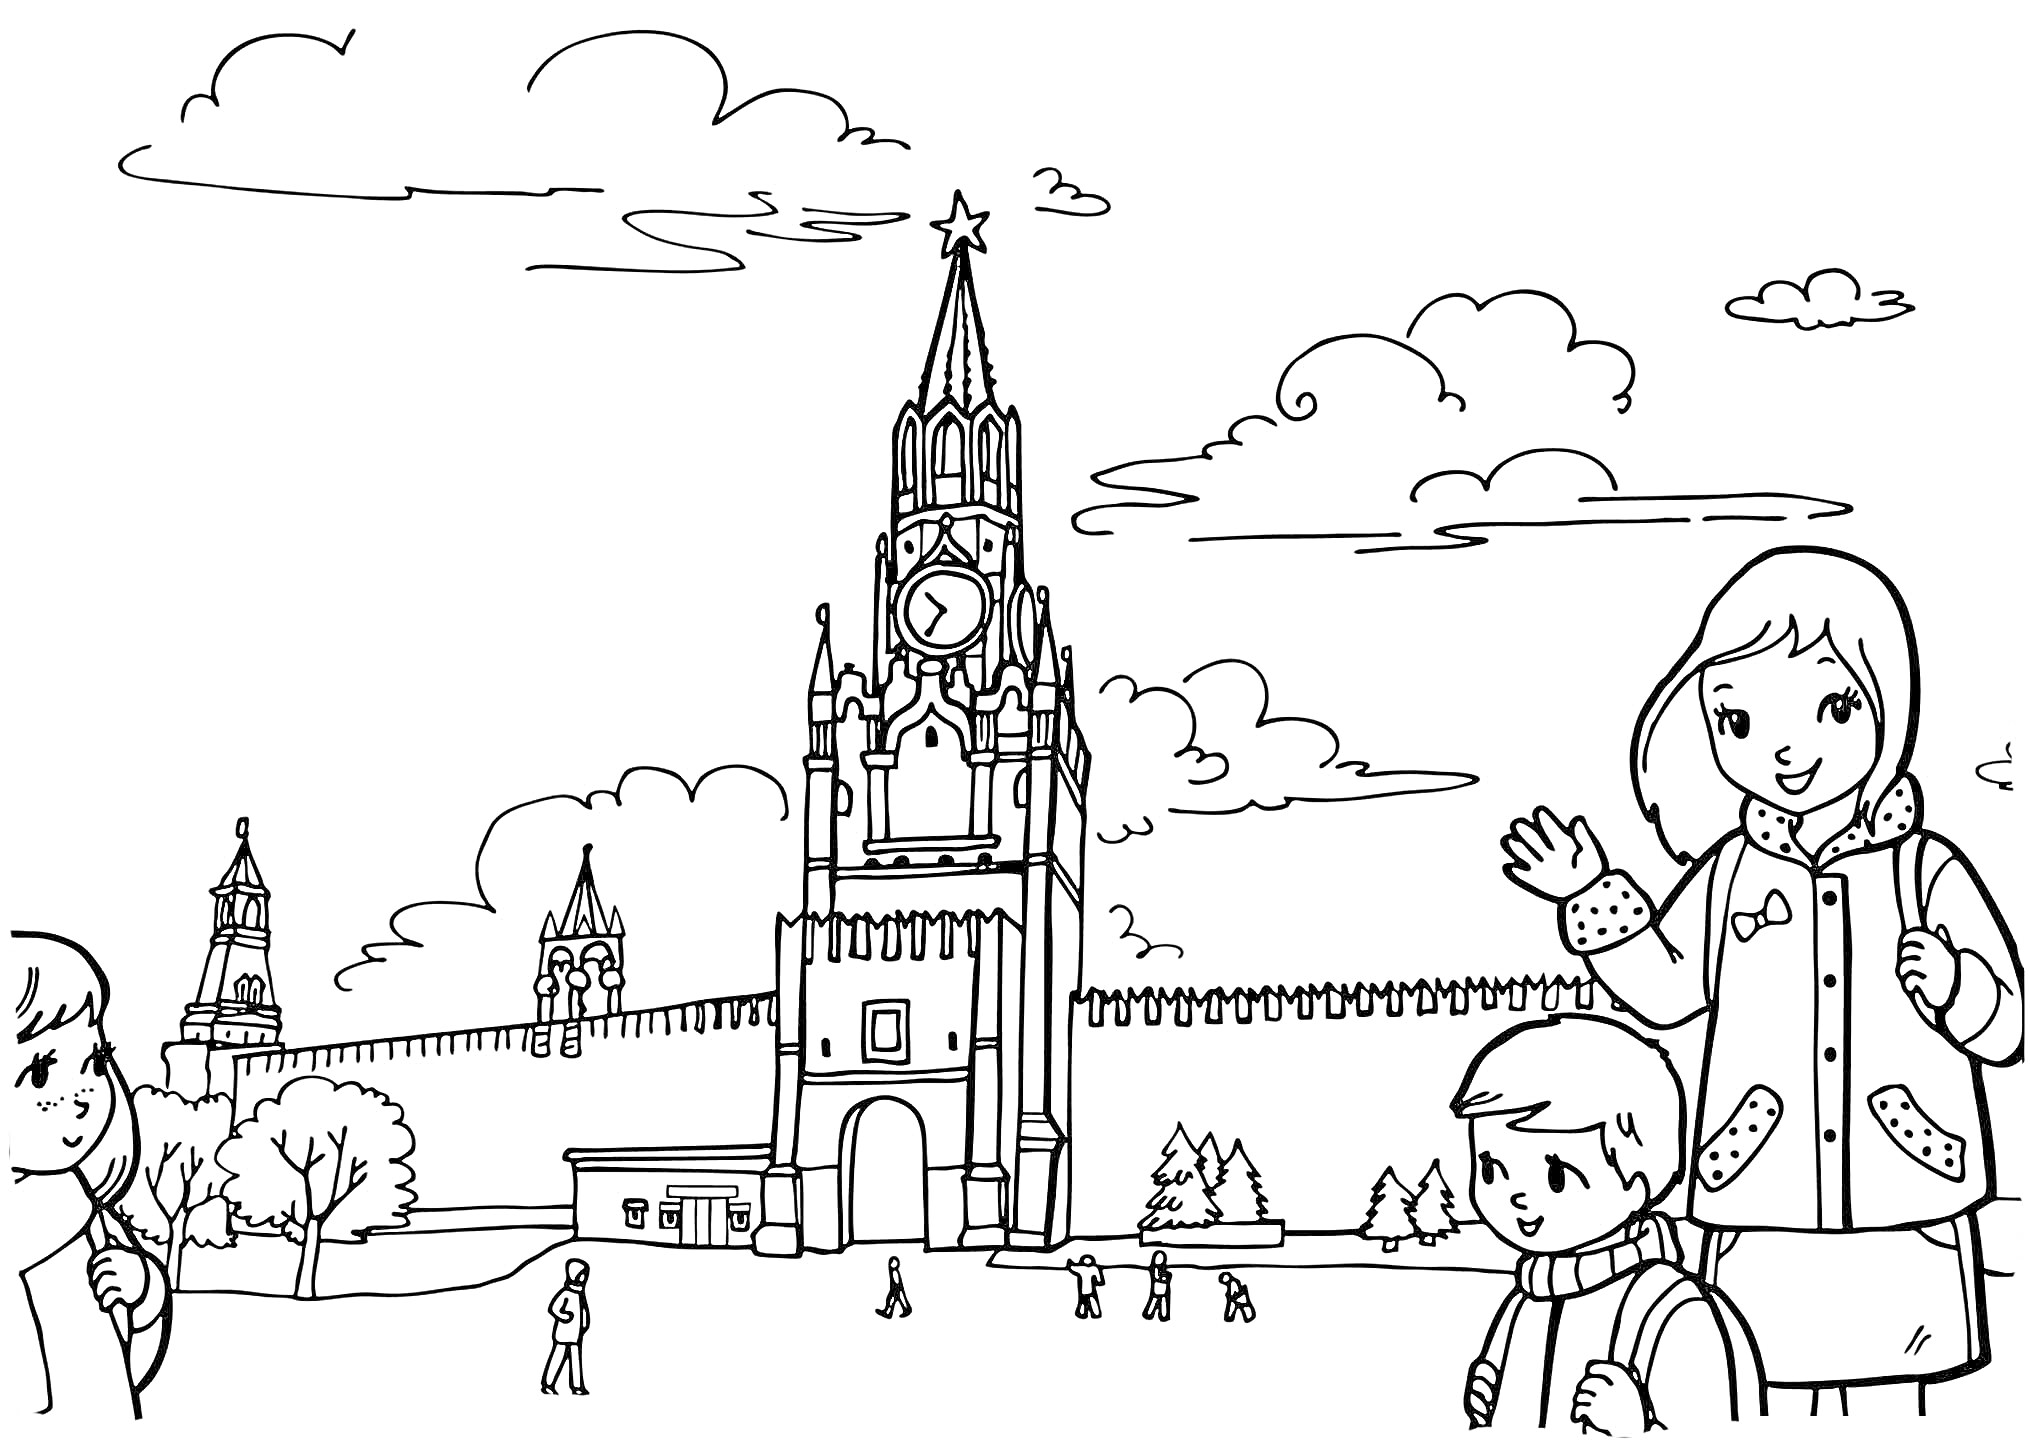 Спасская башня Кремля и дети на прогулке